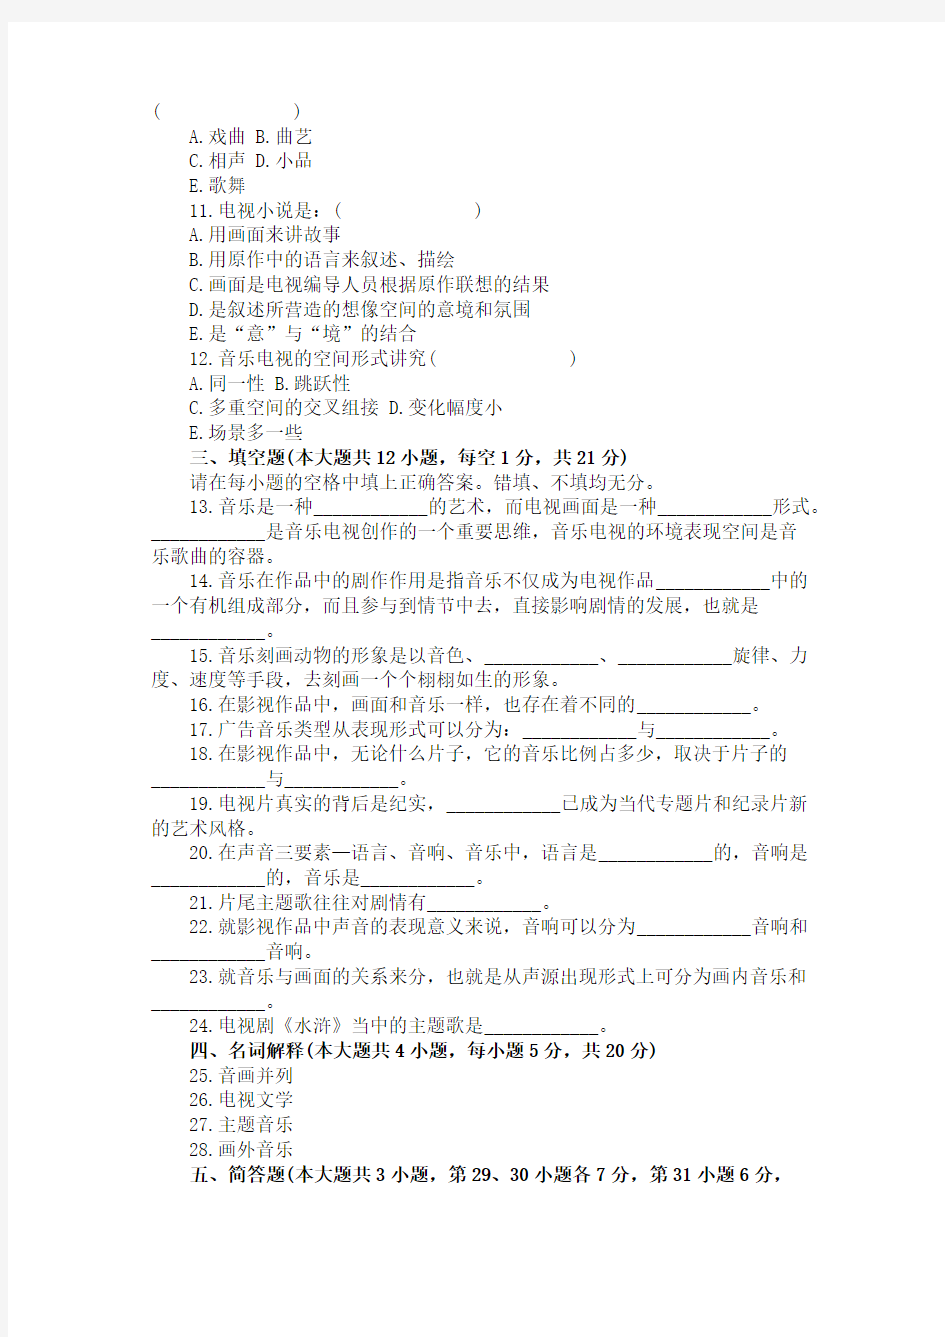 浙江省2007年1月高等教育自学考试电视音乐与音响试题